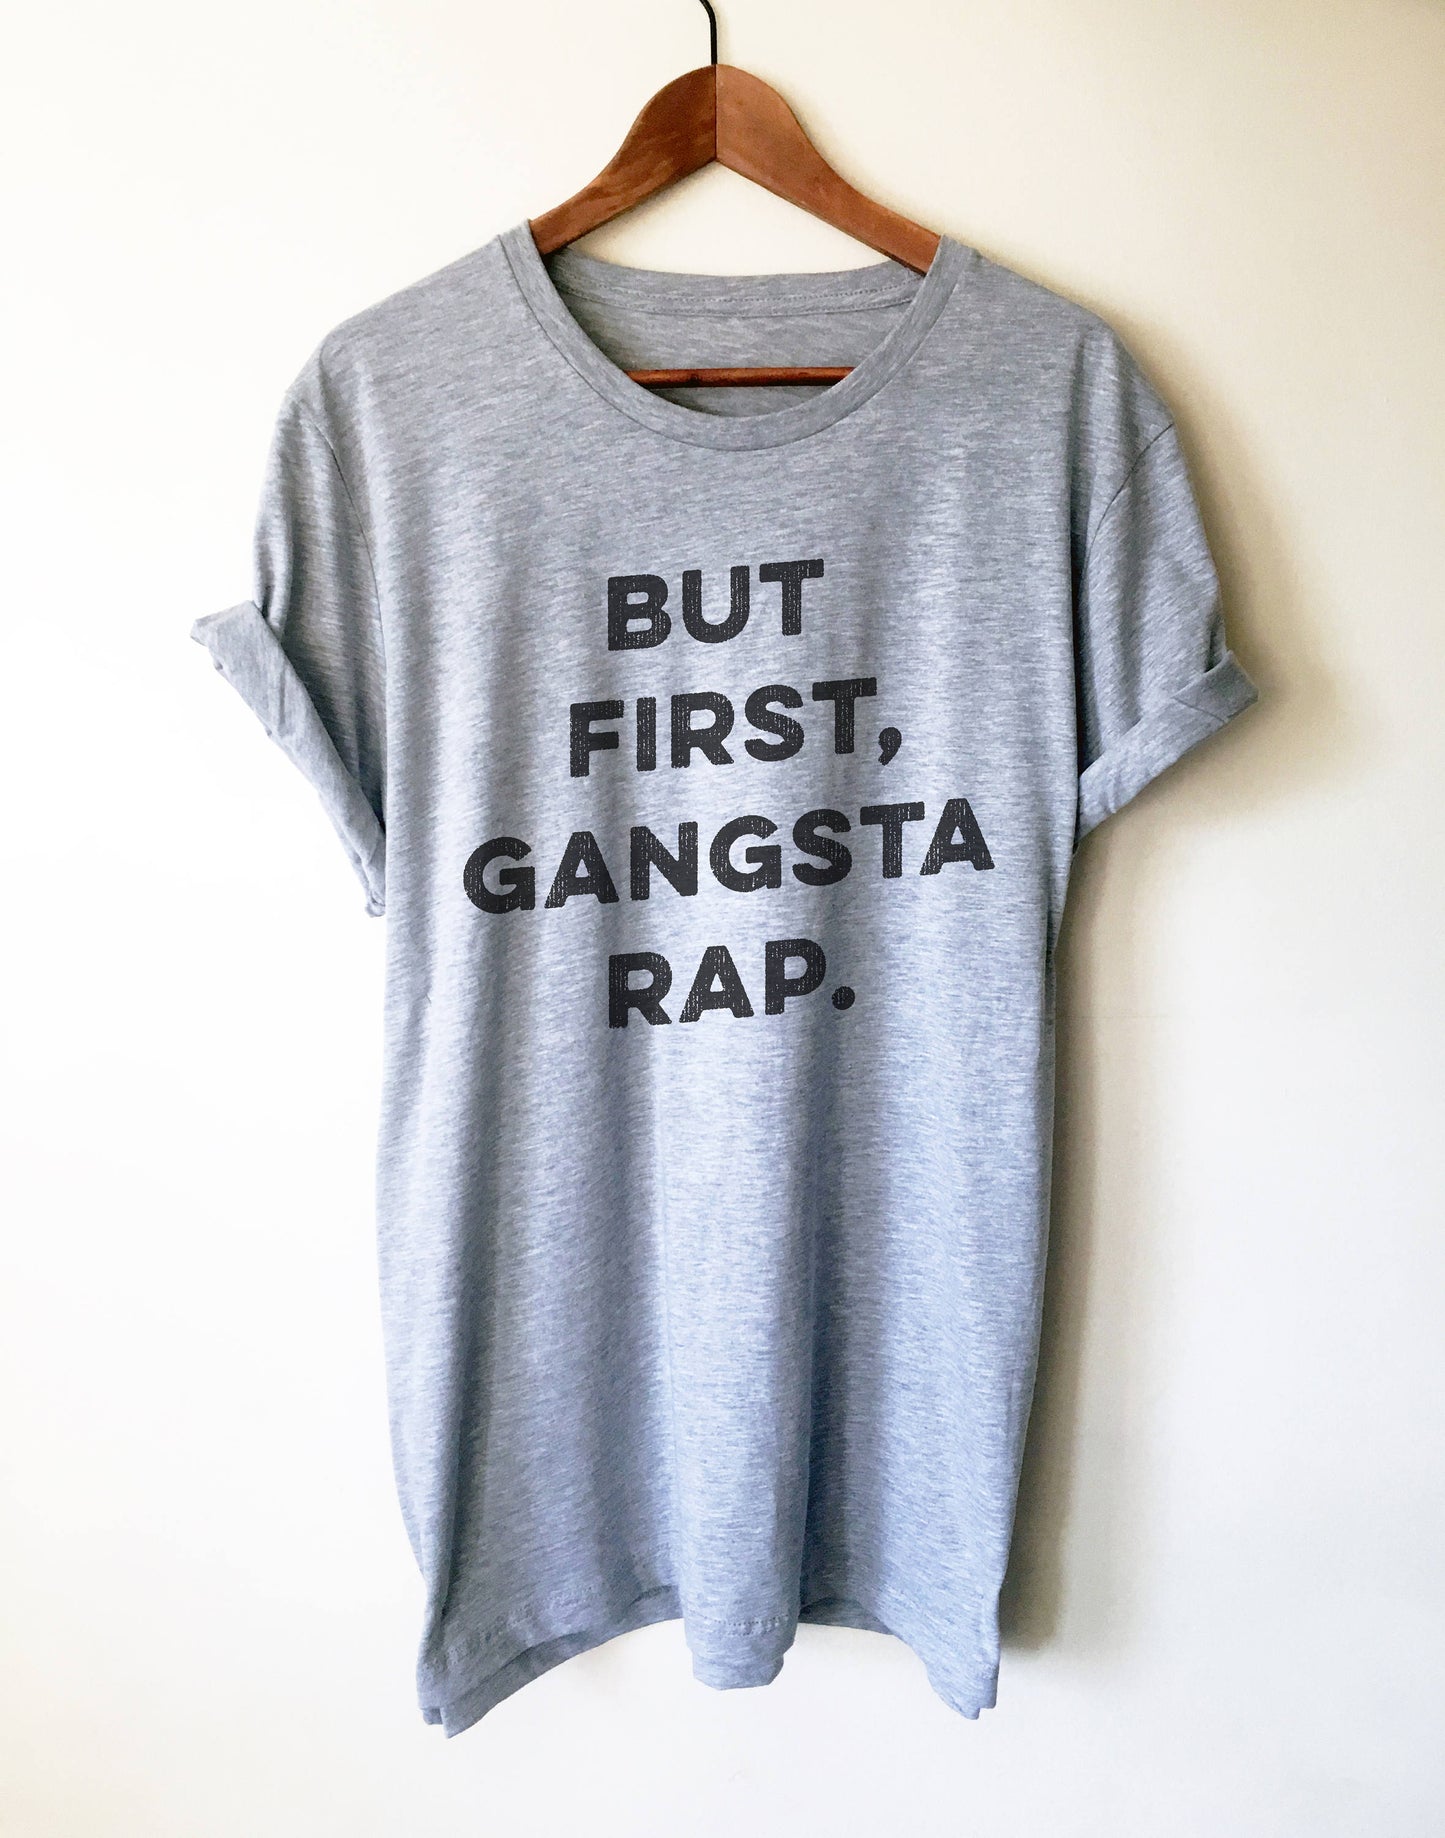 But First Gangsta Rap Unisex T-Shirt - Gangsta, Gangster Rap Shirt, Thug Life, Gangsta Rap, Music Lover T Shirt, Karaoke, Workout Shirt